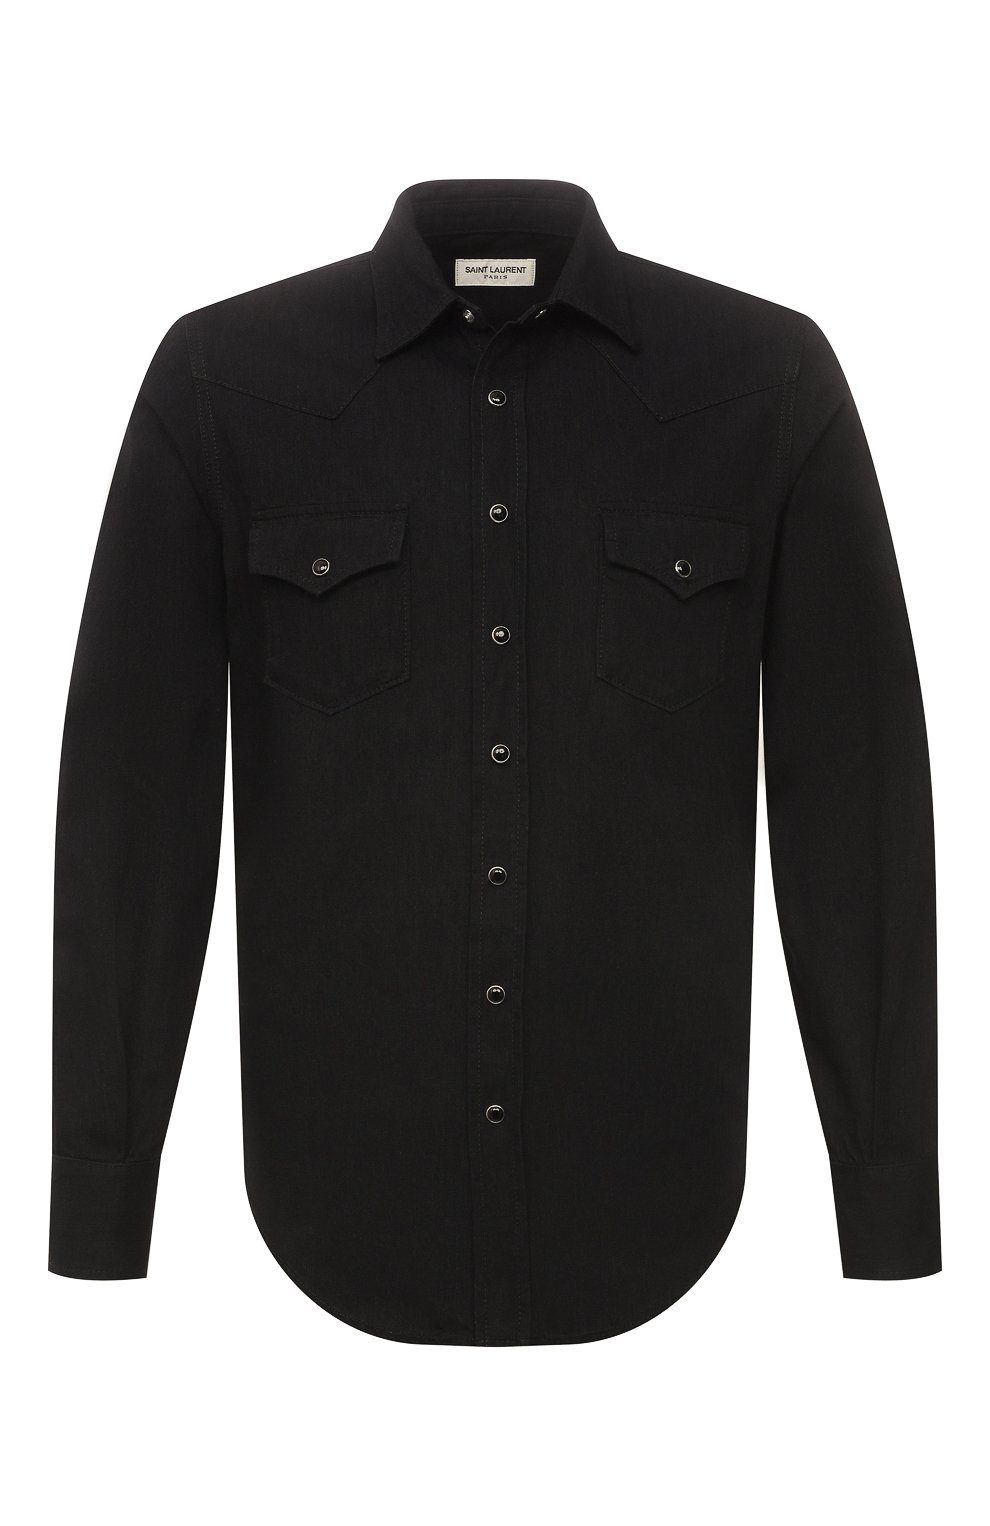 Рубашки Saint Laurent, Джинсовая рубашка Saint Laurent, Италия, Чёрный, Хлопок: 100%;, 11770324  - купить